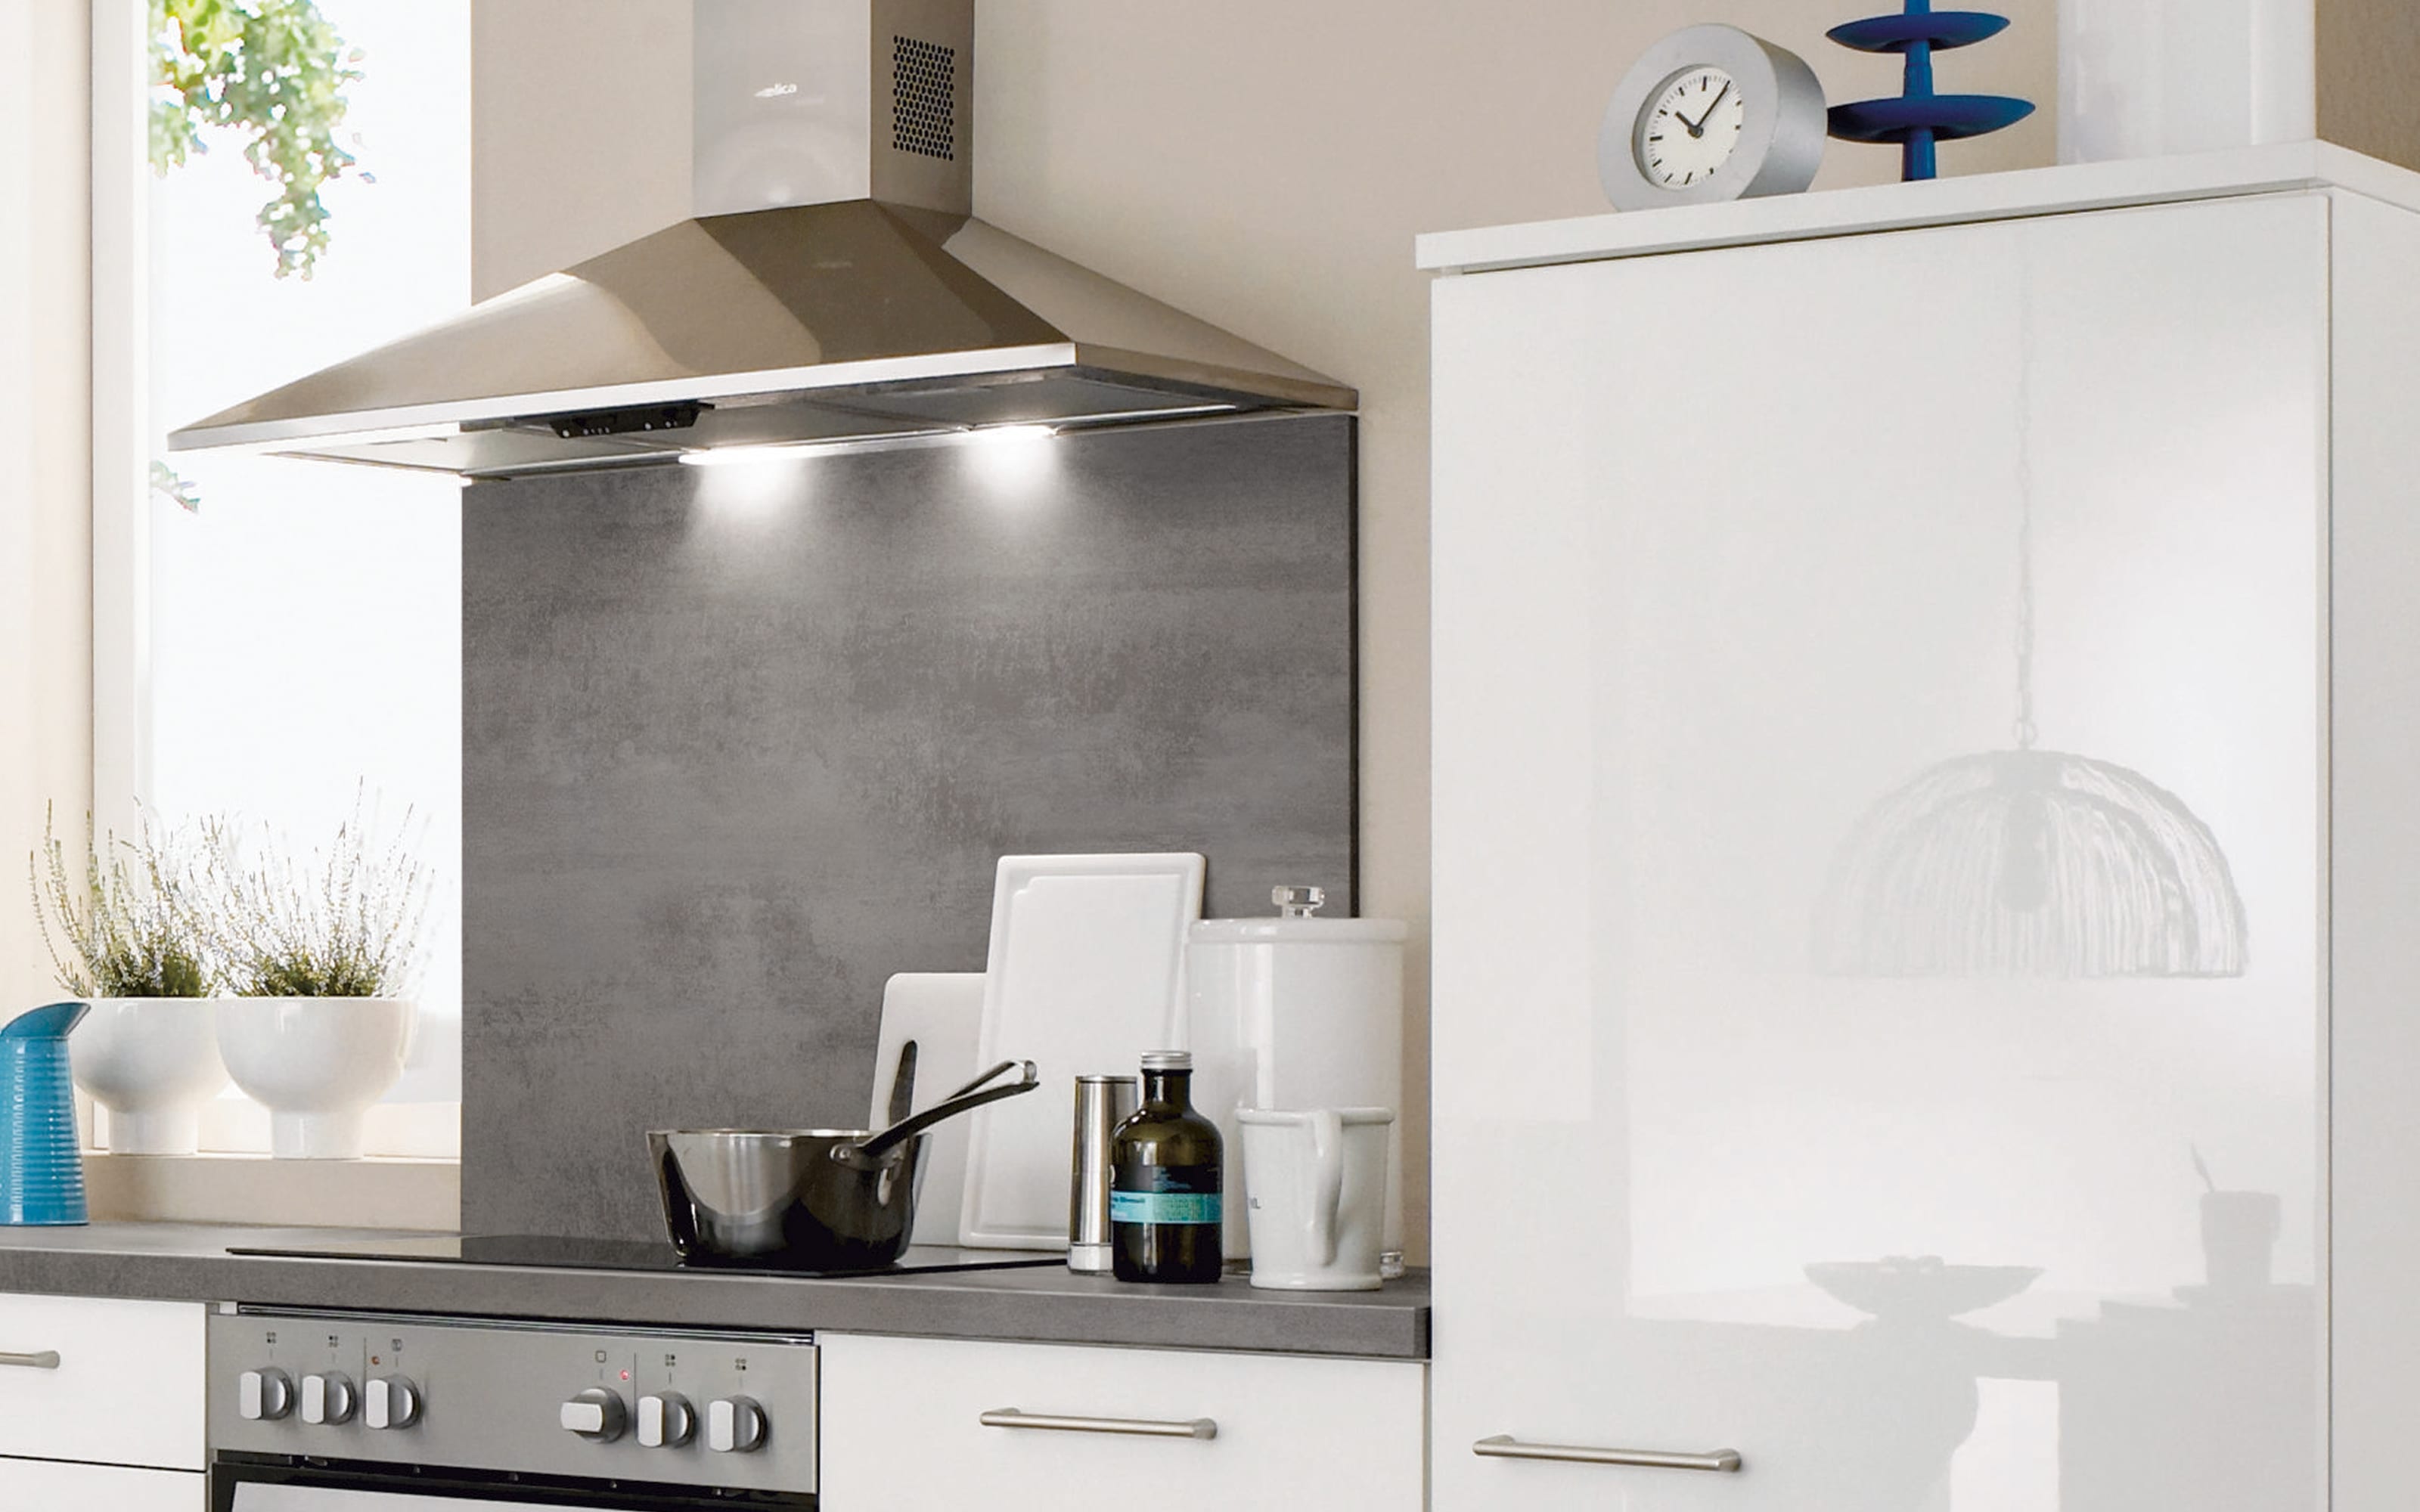 Einbauküche Flash, Hochglanz weiß, inklusive Elektrogeräte